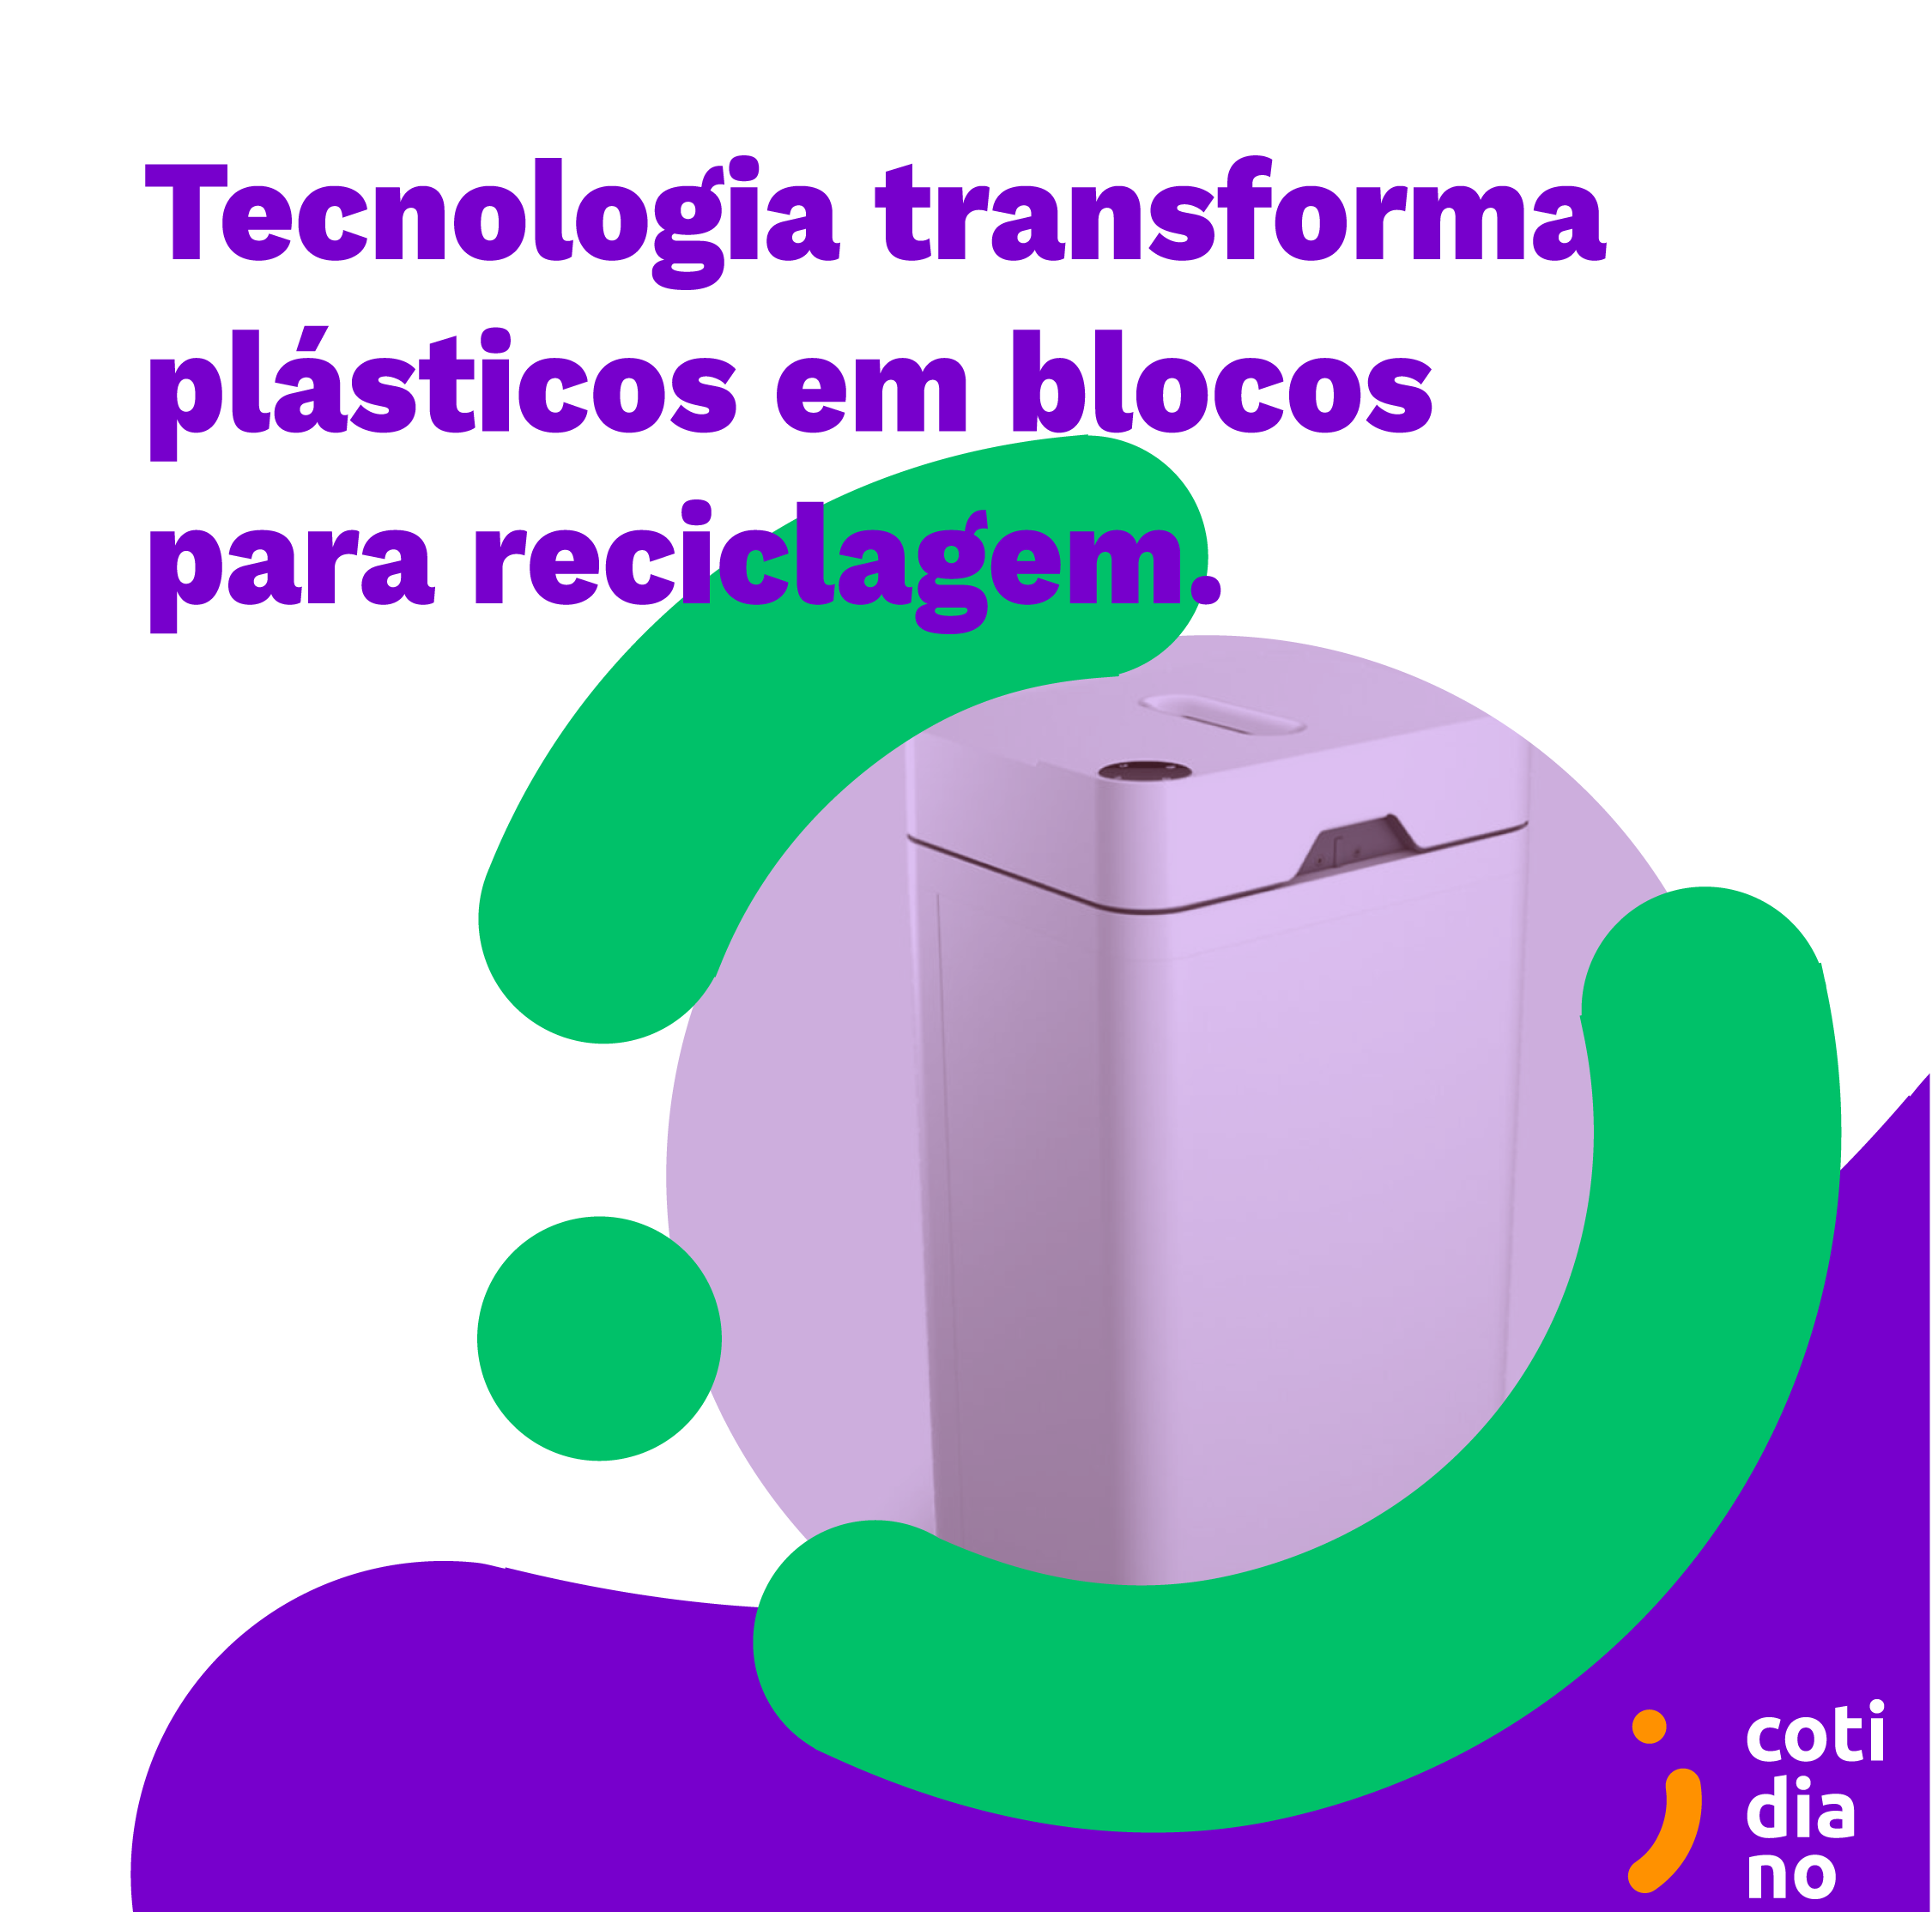 Tecnologia transforma plásticos em blocos para reciclagem